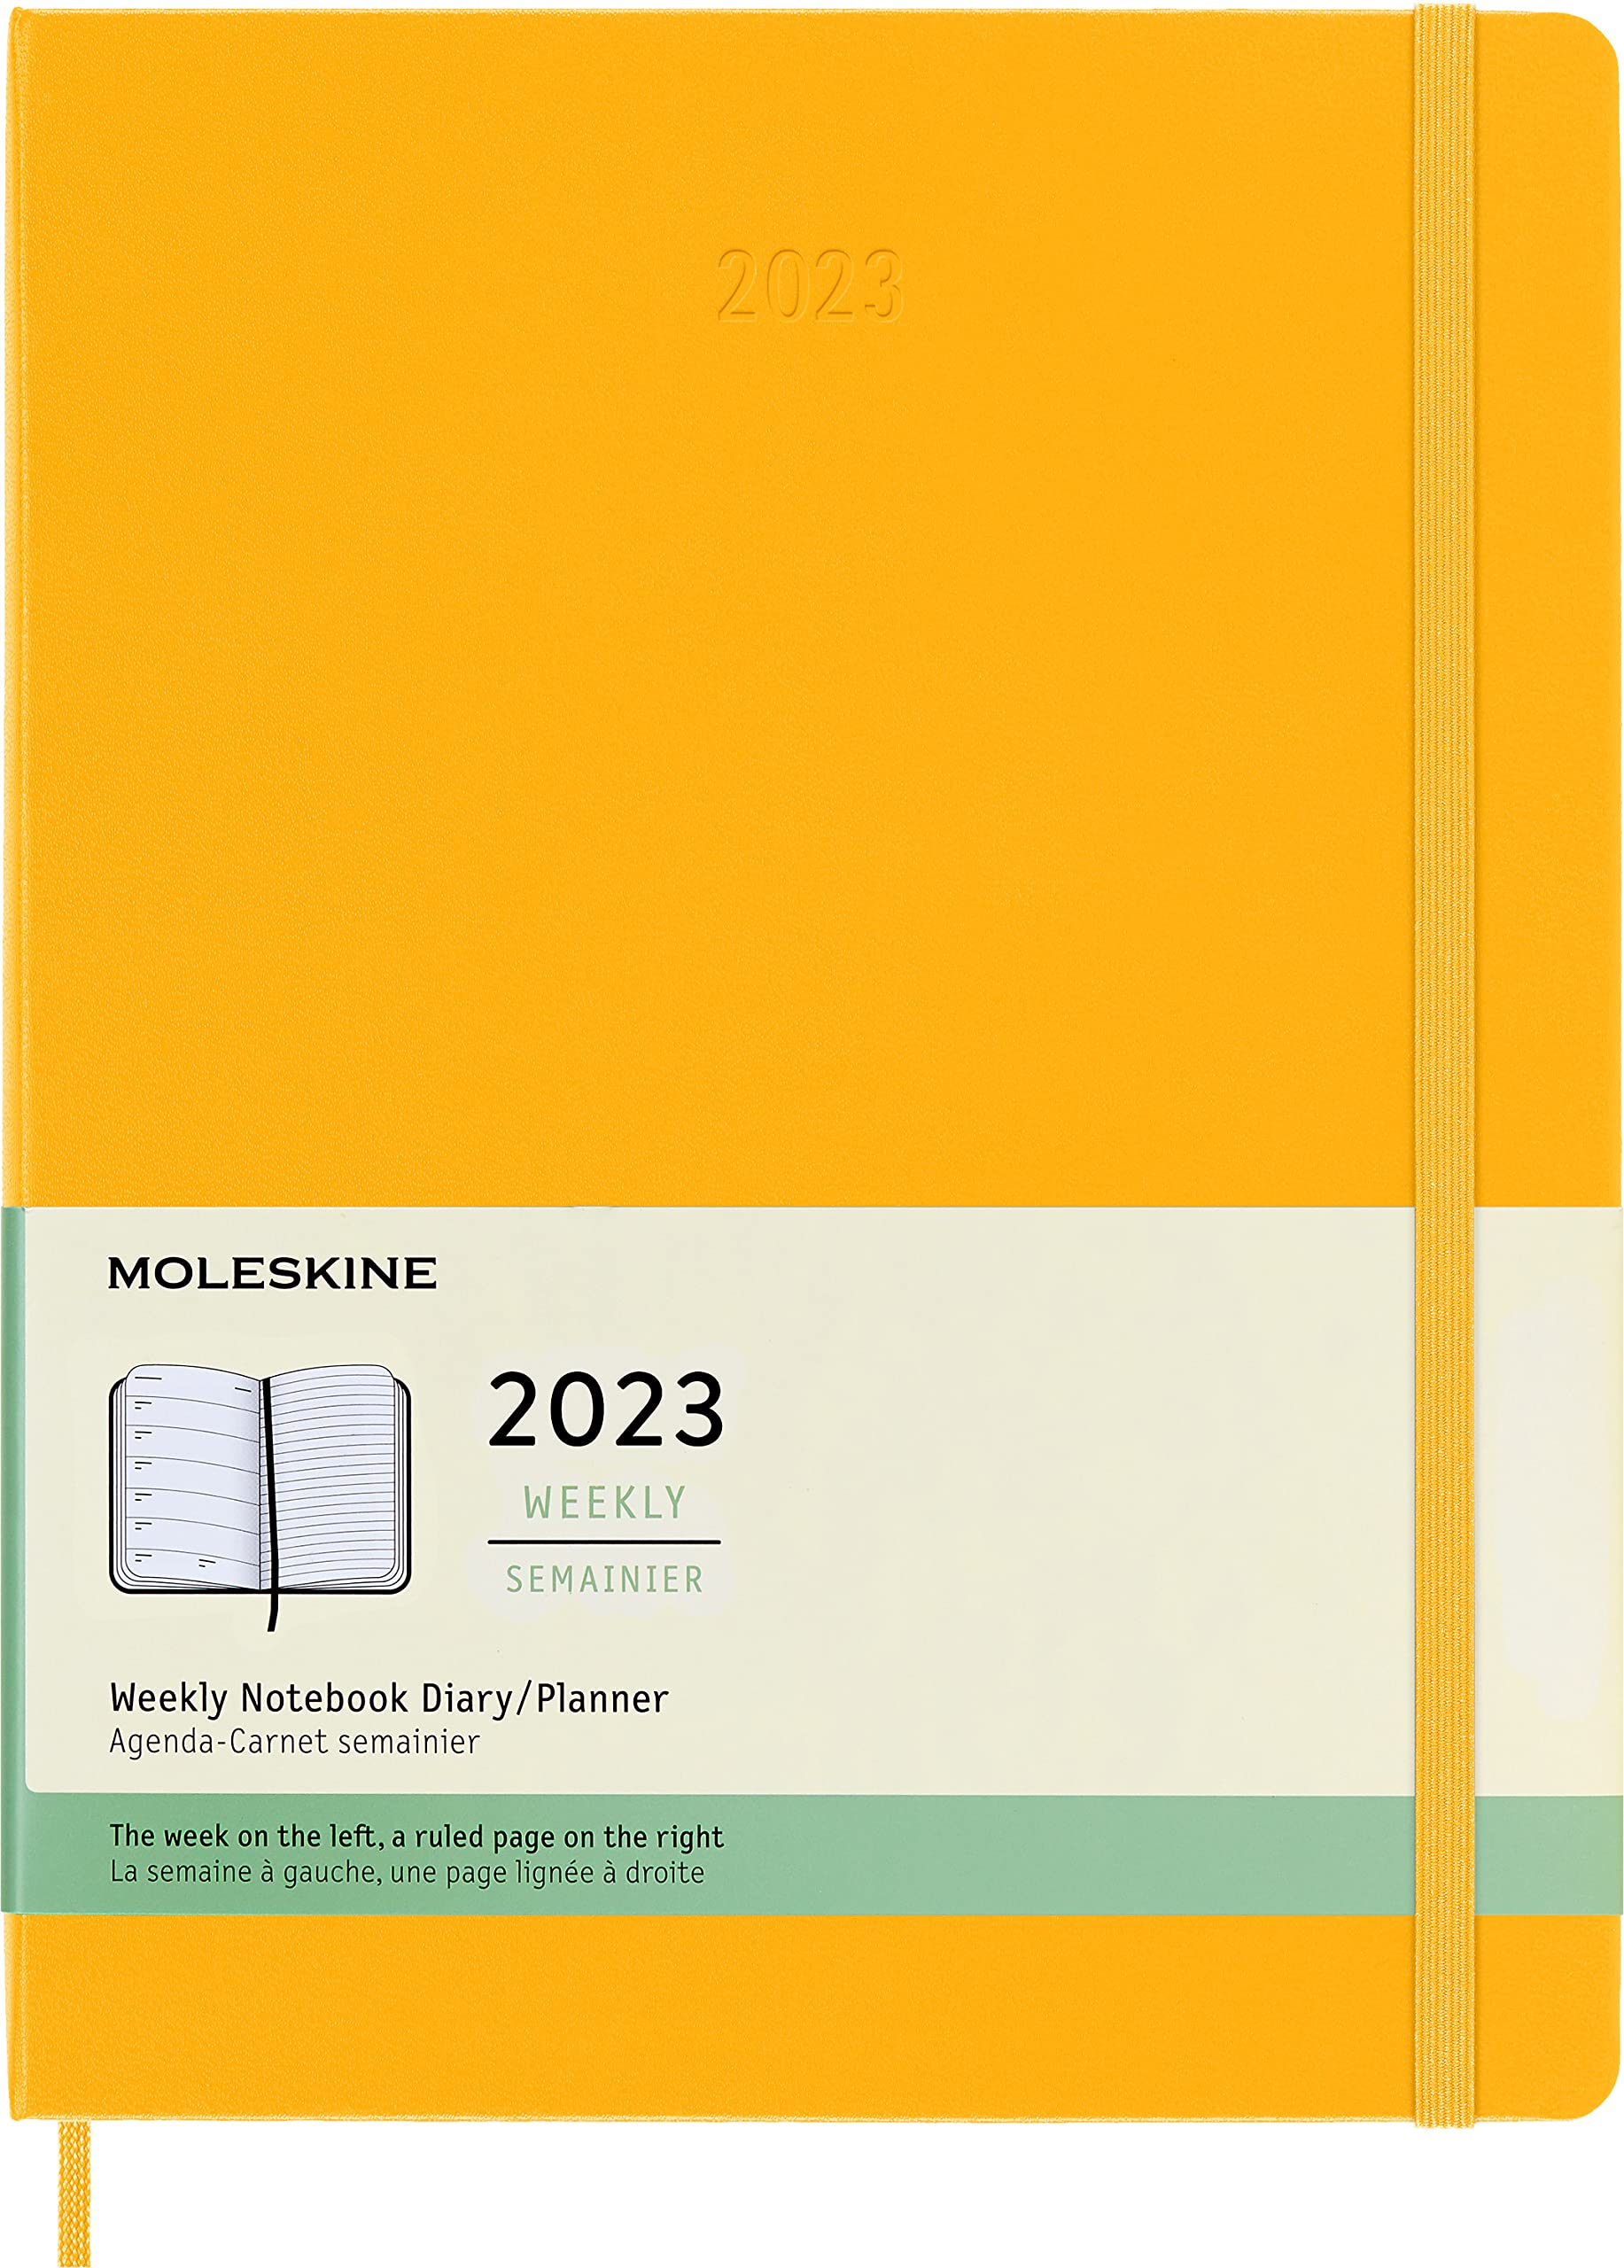 moleskine weekly notebook 2023